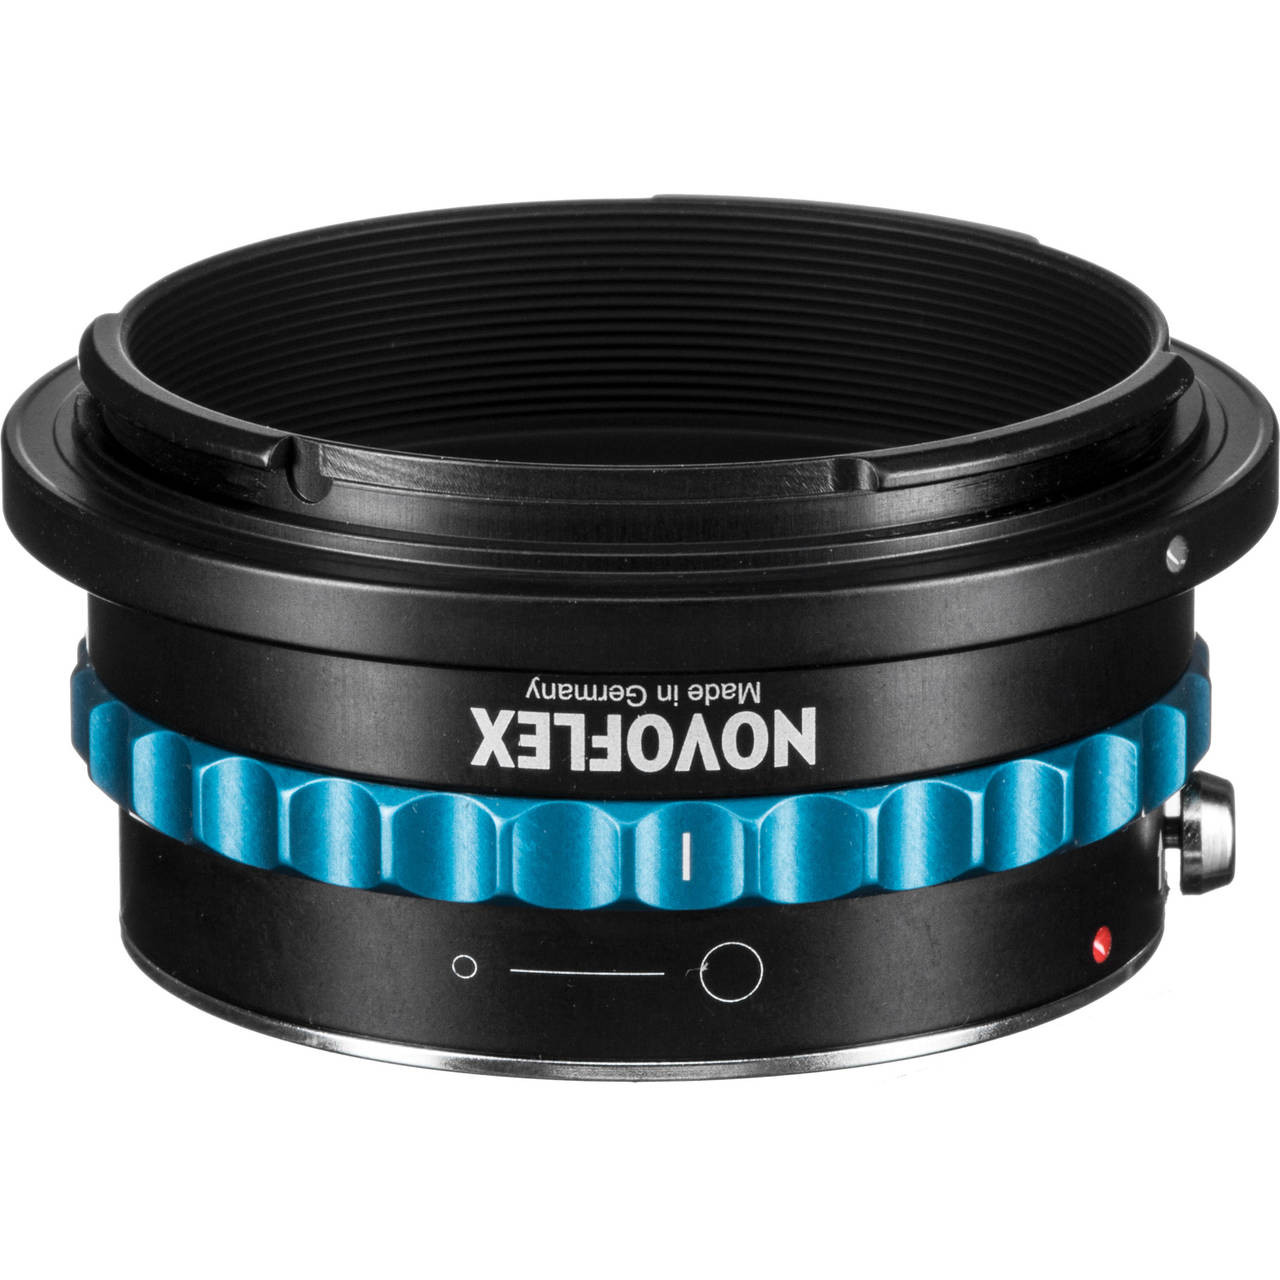 ベンチ 収納付 Novoflex Adapter for T2 Lenses to Nikon Cameras 